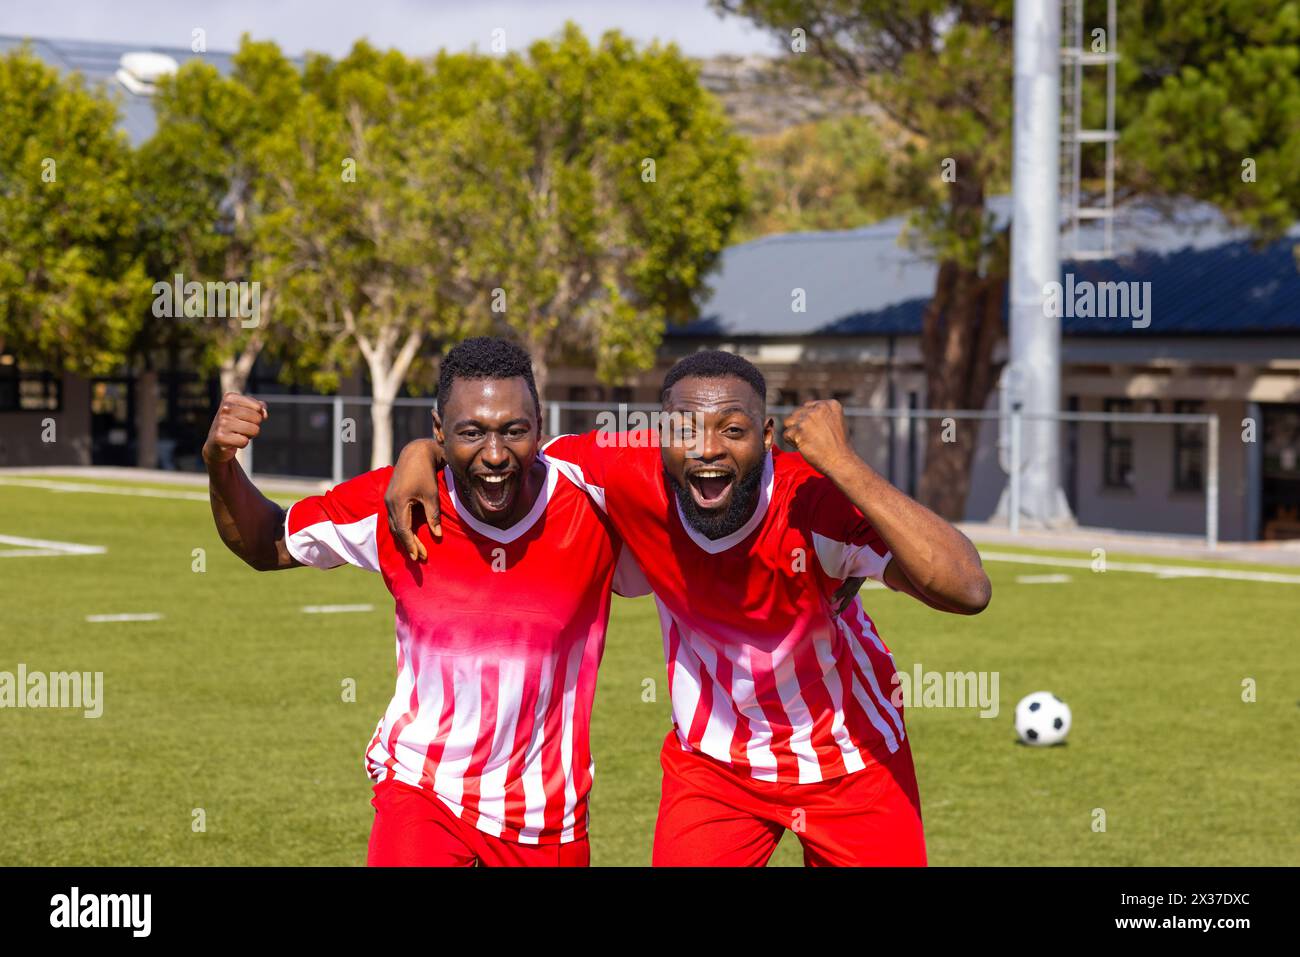 Deux jeunes athlètes afro-américains en maillots rouges célèbrent sur un terrain de football Banque D'Images